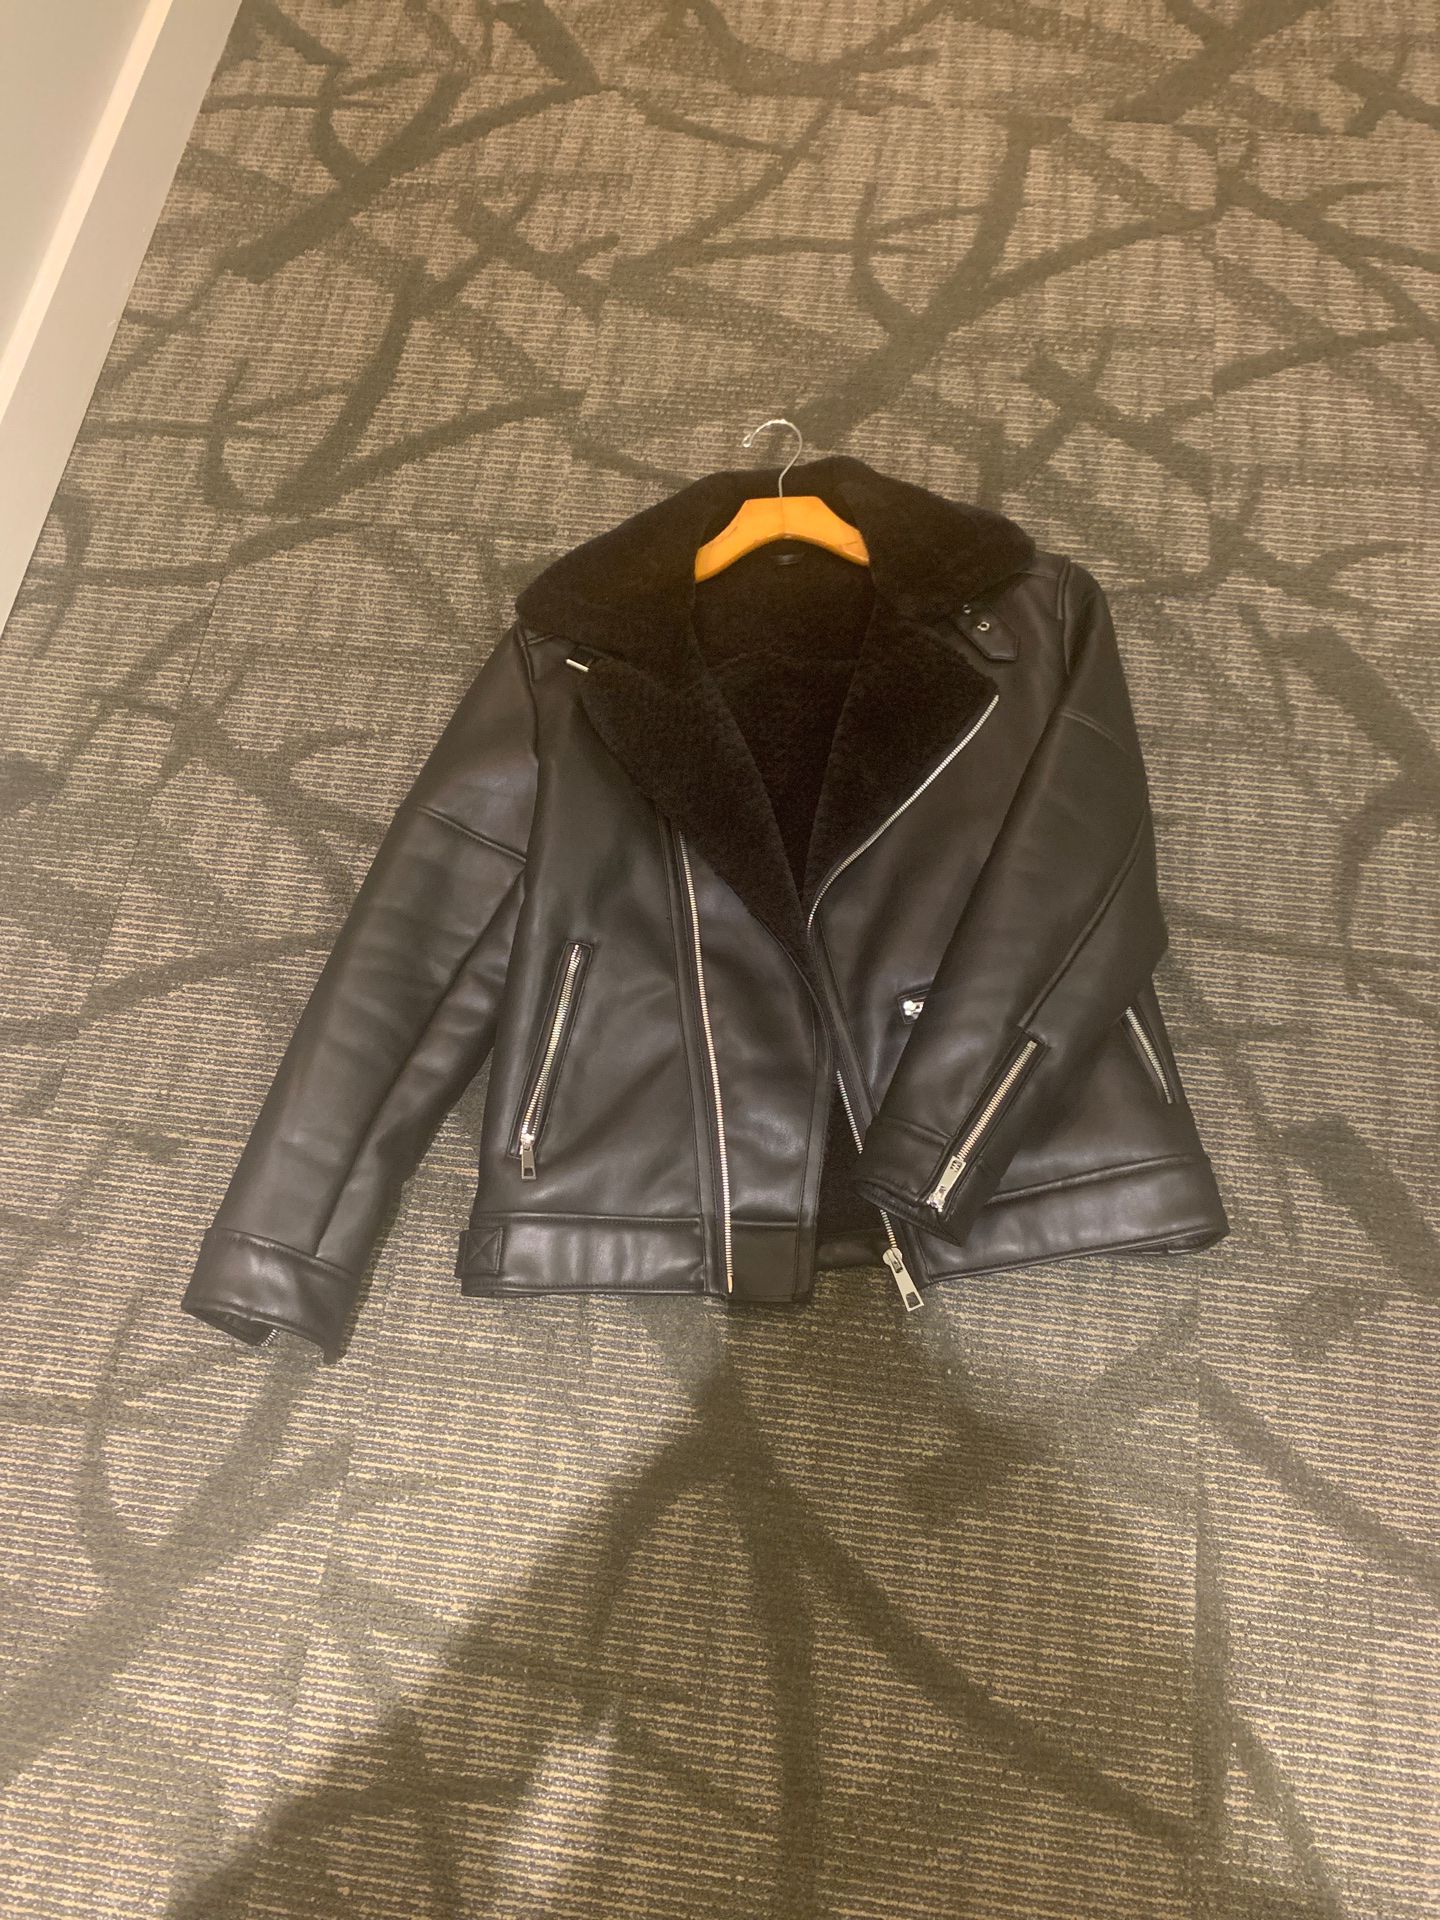 Men’s faux leather jacket sz medium